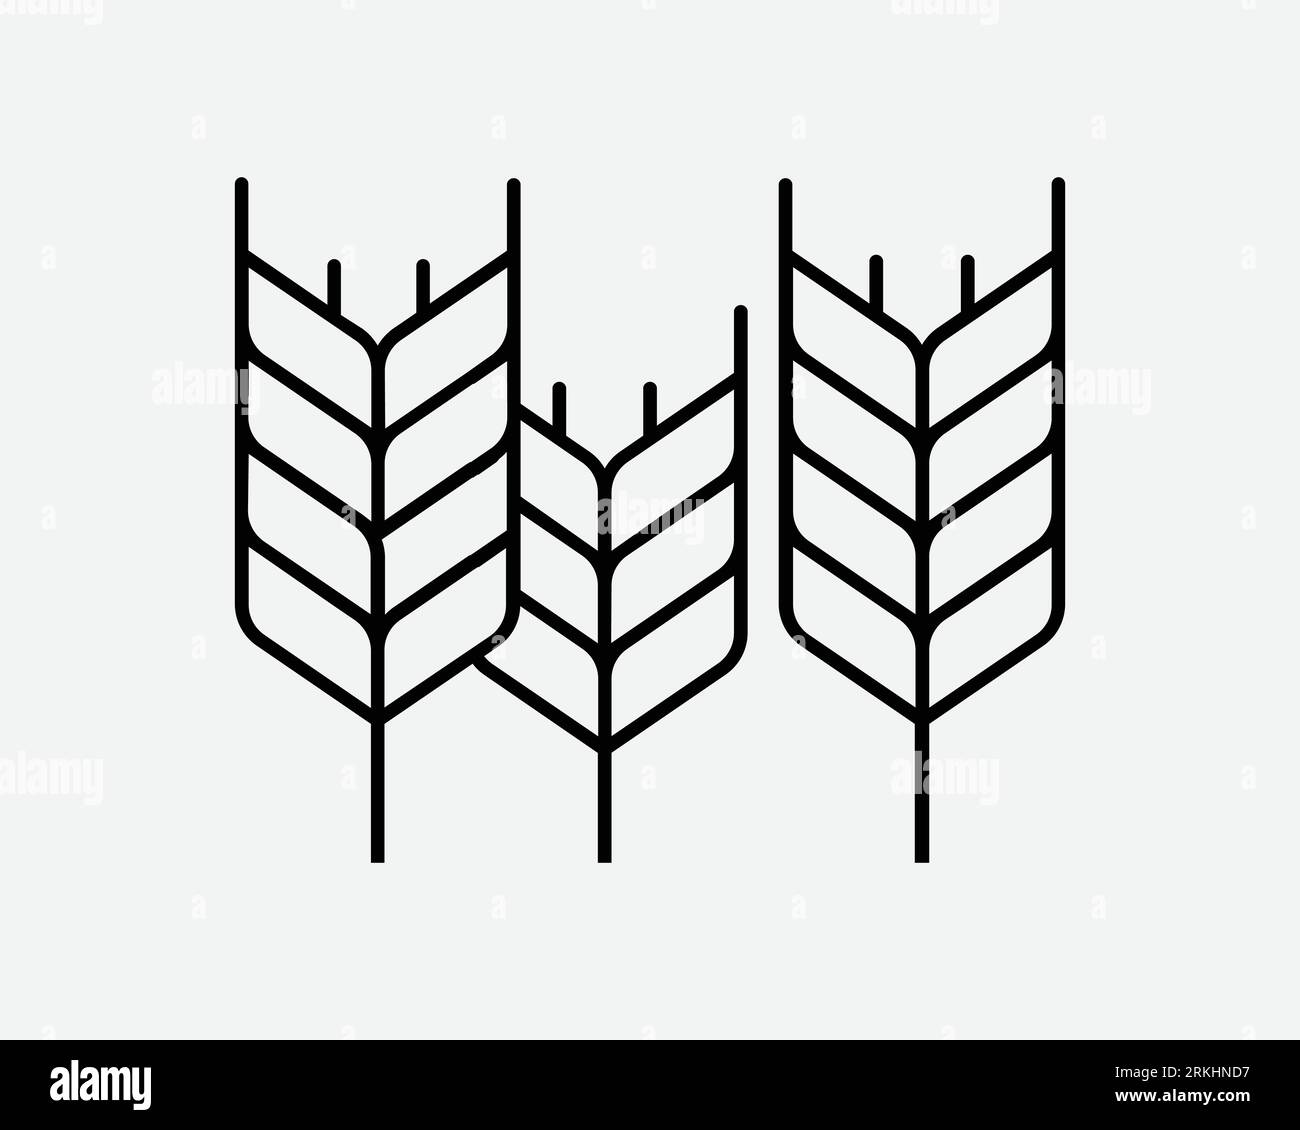 Icône de blé grain Farm Crop riz Rye orge céréales Seed maïs Organic Plant Farming Noir blanc contour forme vecteur Clipart Illustration graphique symbole Illustration de Vecteur